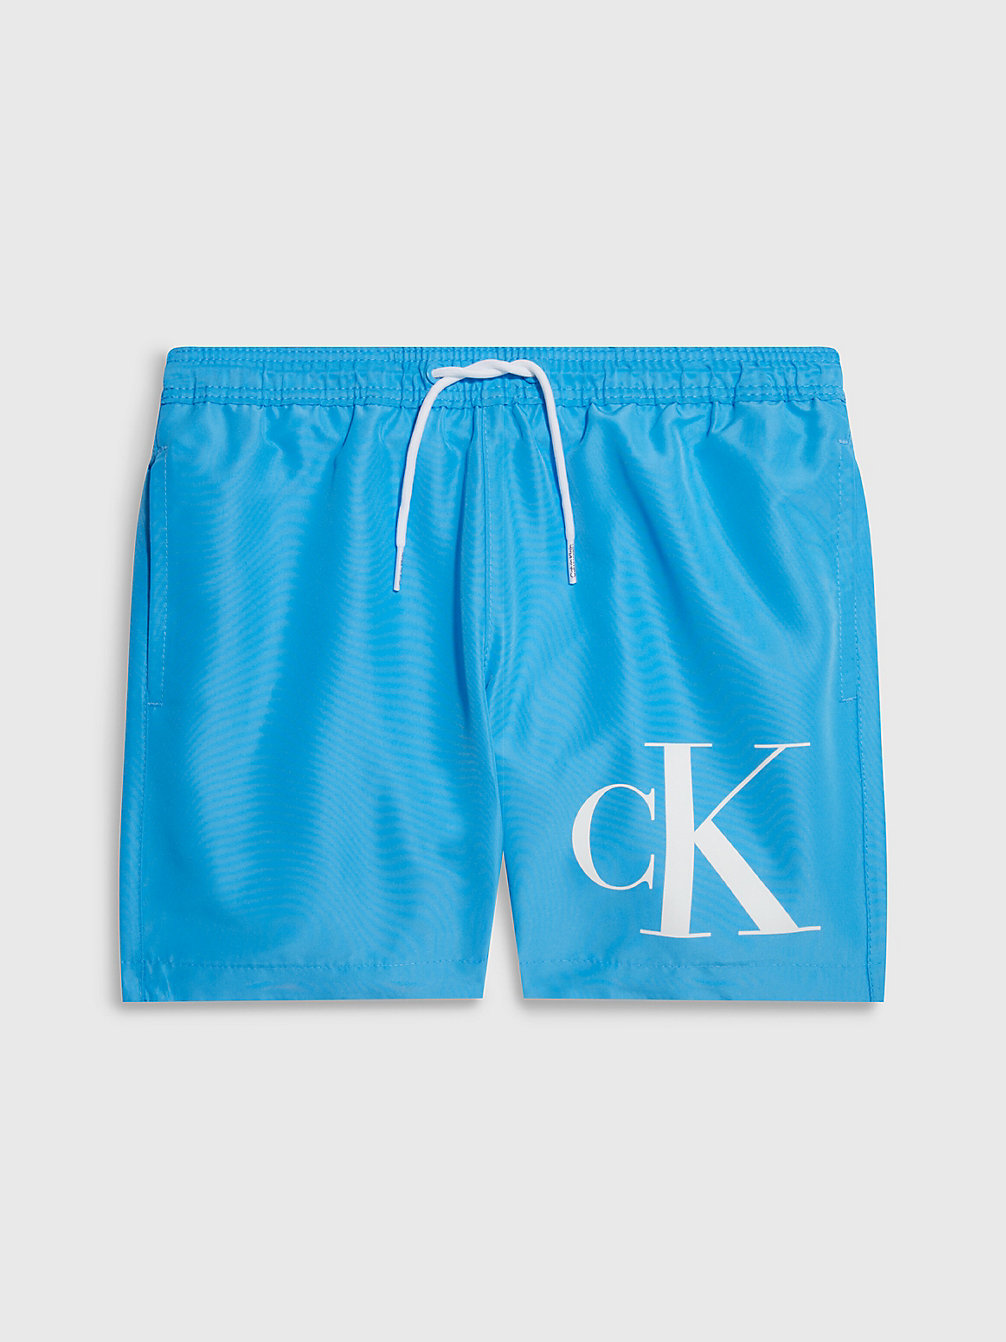 BLUE CRUSH > Jongenszwemshorts - CK Monogram > undefined boys - Calvin Klein